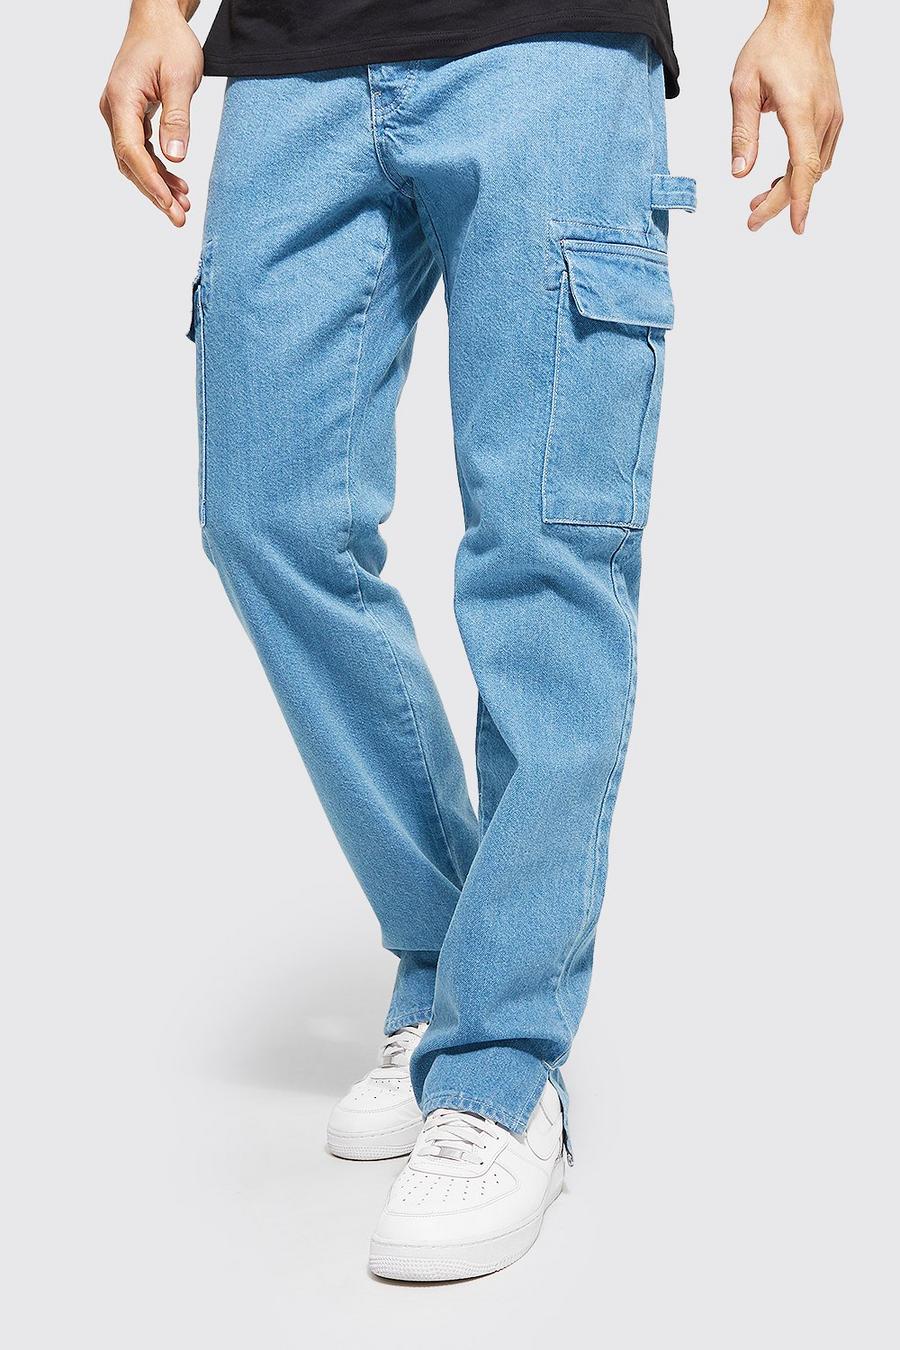 כחול עתיק ג'ינס קרגו בגזרה ישרה עם רוכסן בצד ומכפלת לגברים גבוהים image number 1